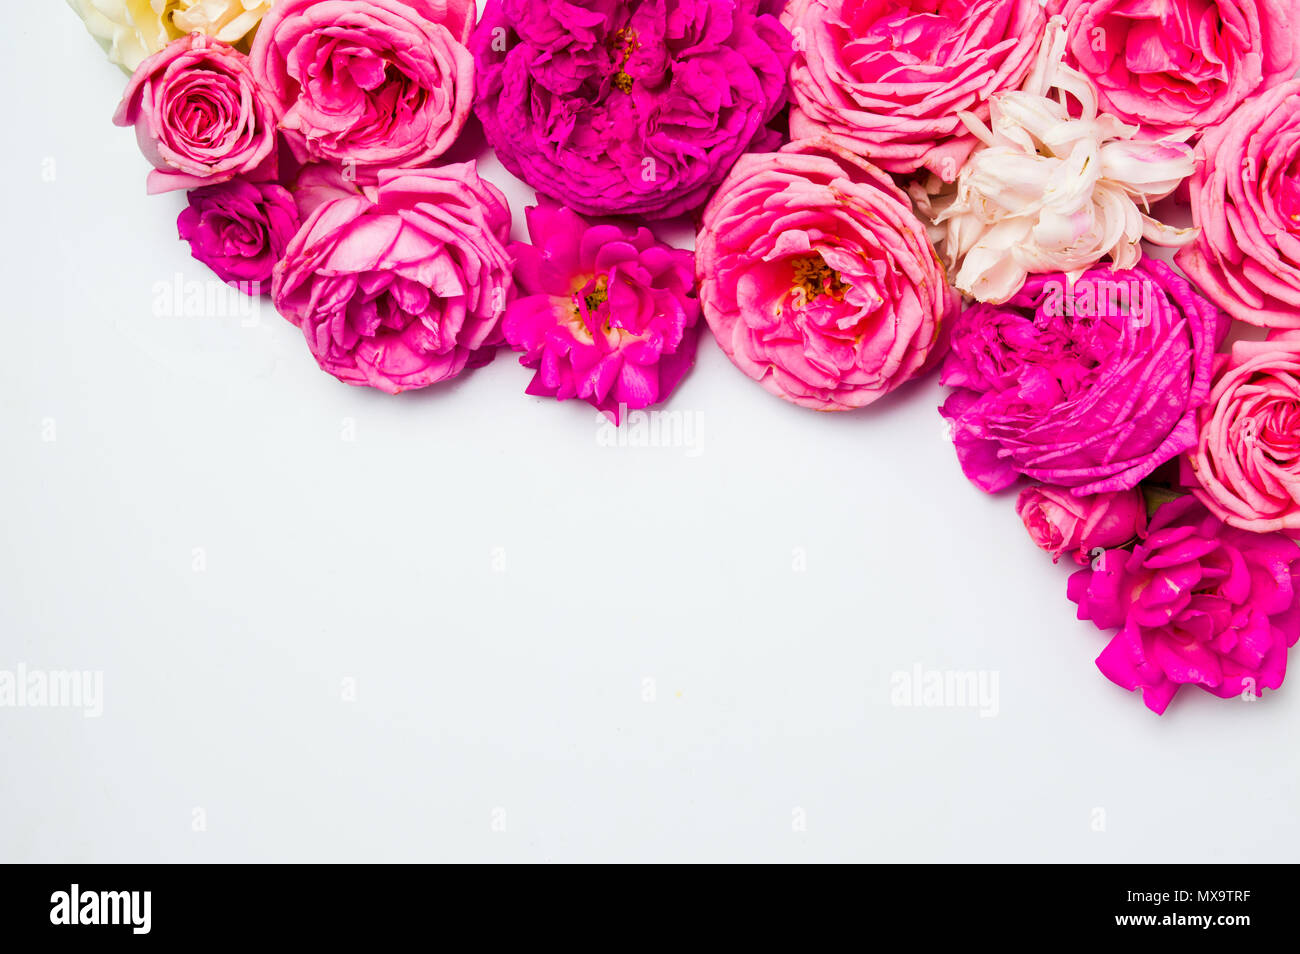 Colorido arreglo de rosas sobre fondo blanco con espacio de copia Foto de stock